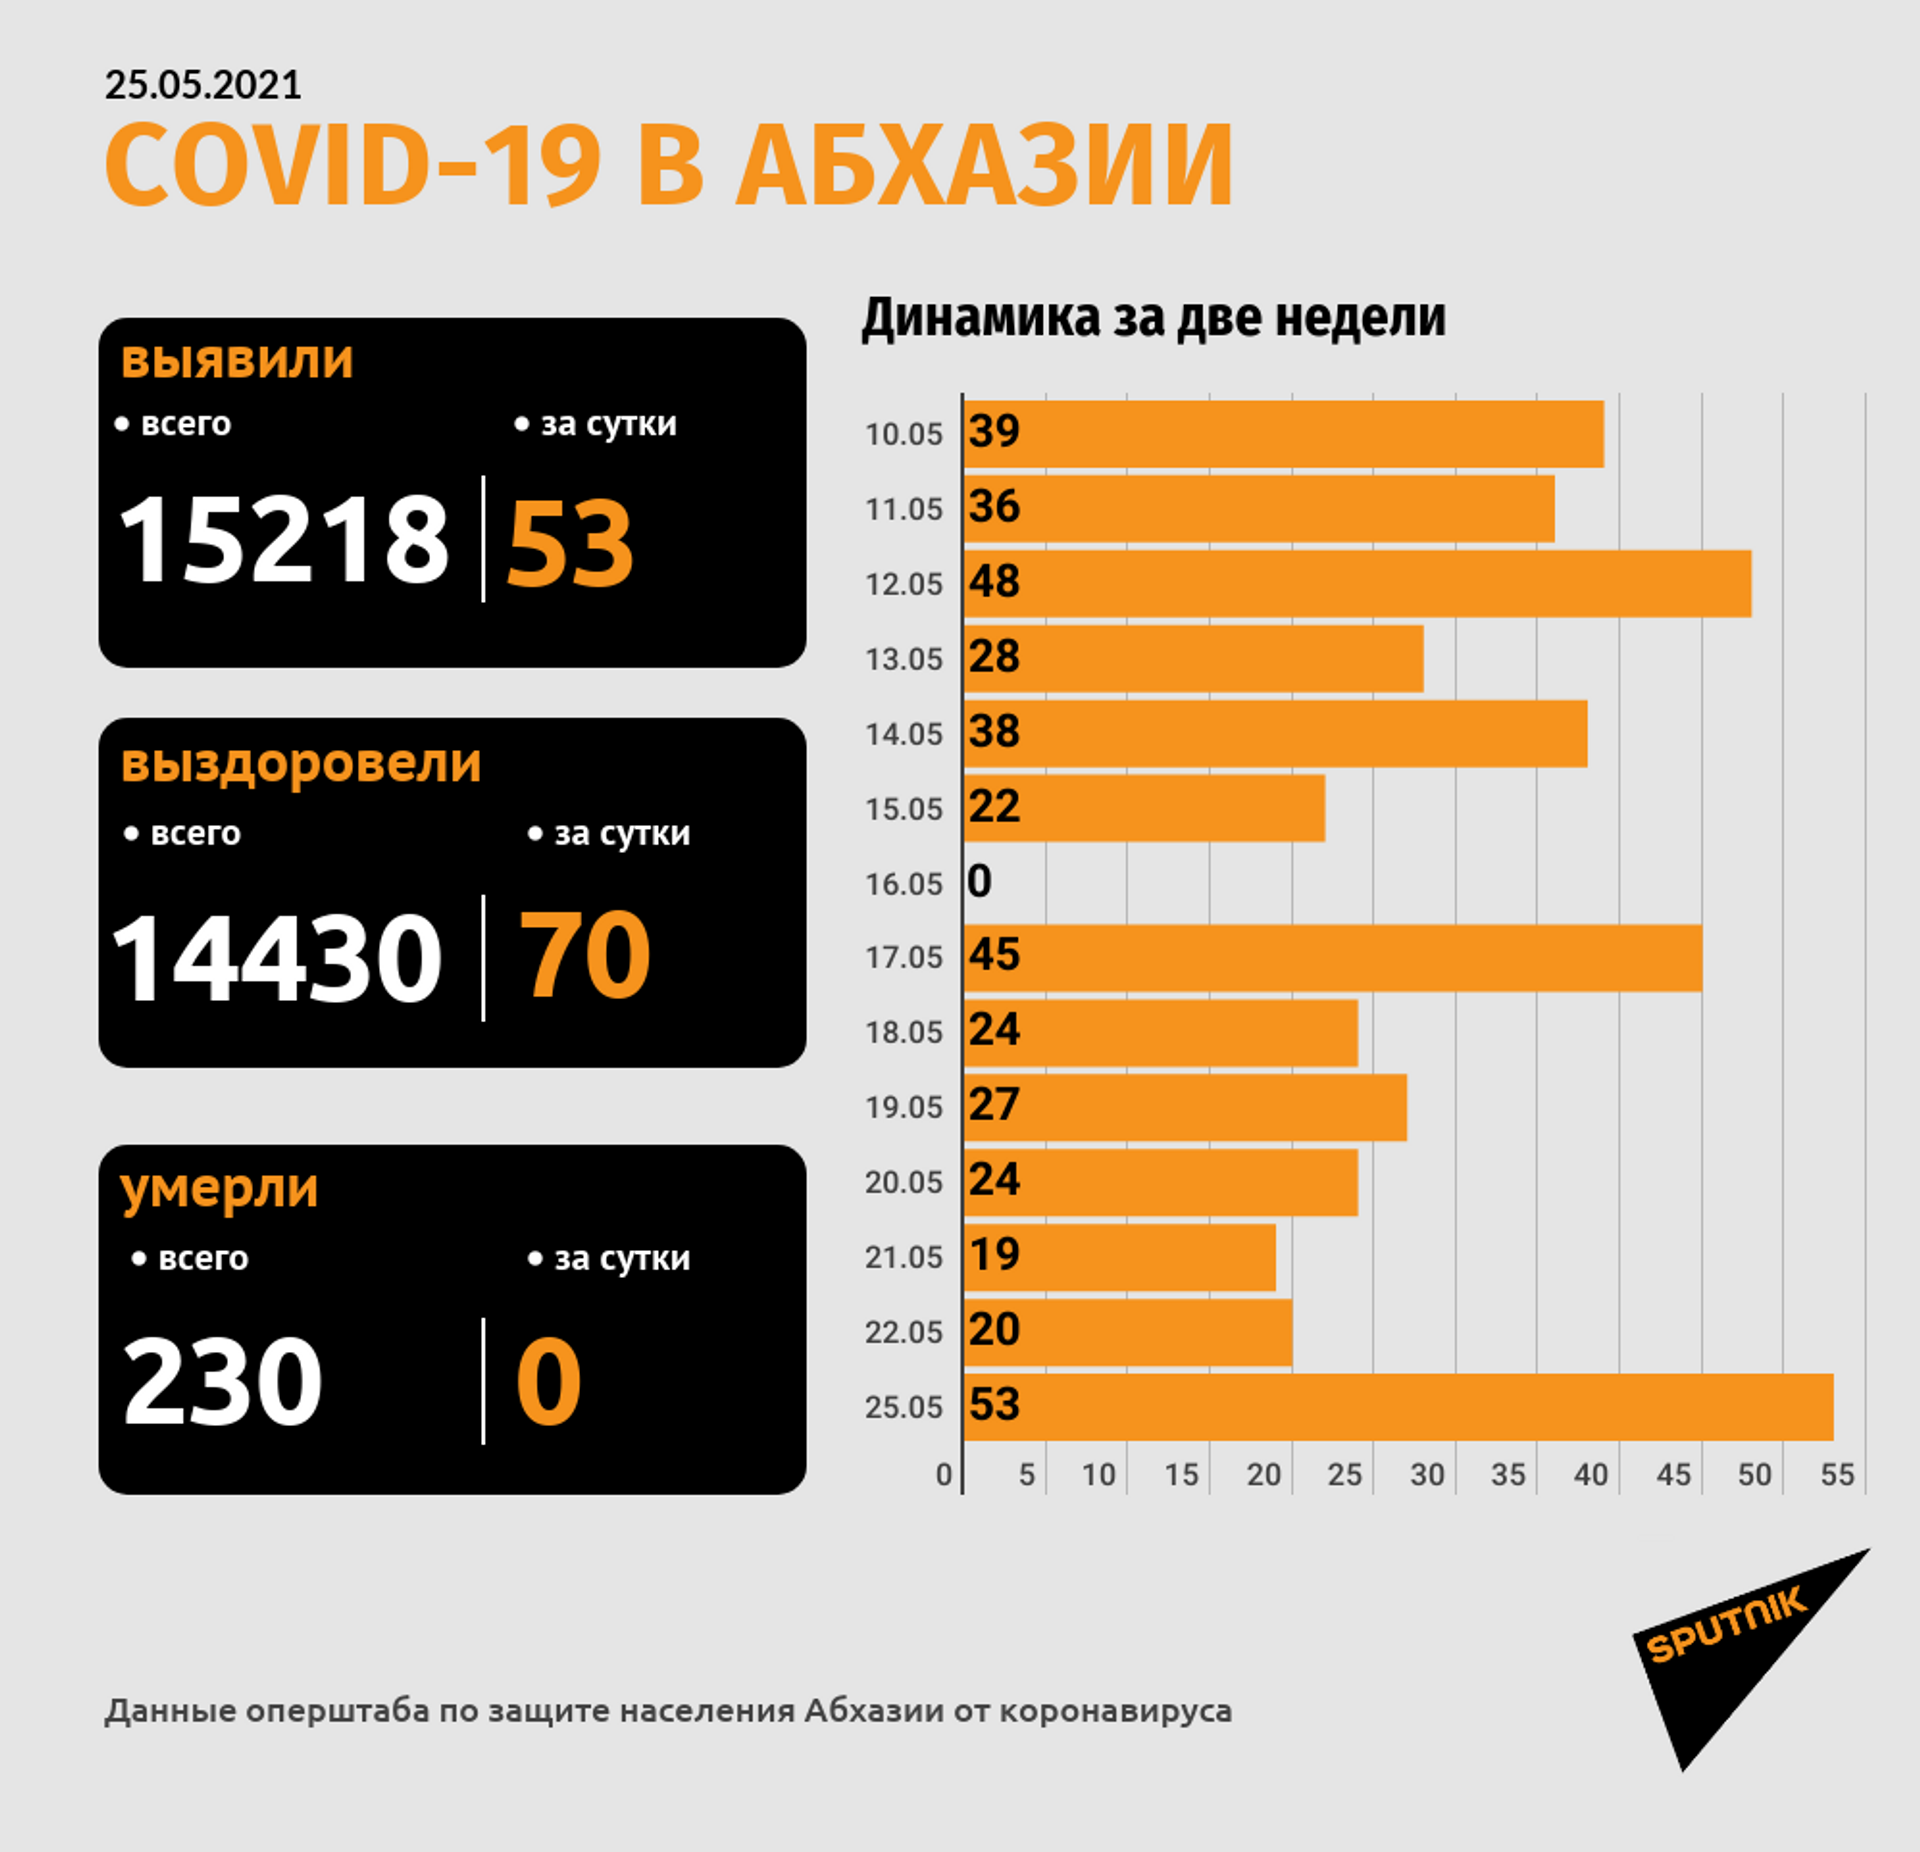 В Абхазии выявили 53 новых случая заражения коронавирусом за сутки - Sputnik Абхазия, 1920, 25.05.2021